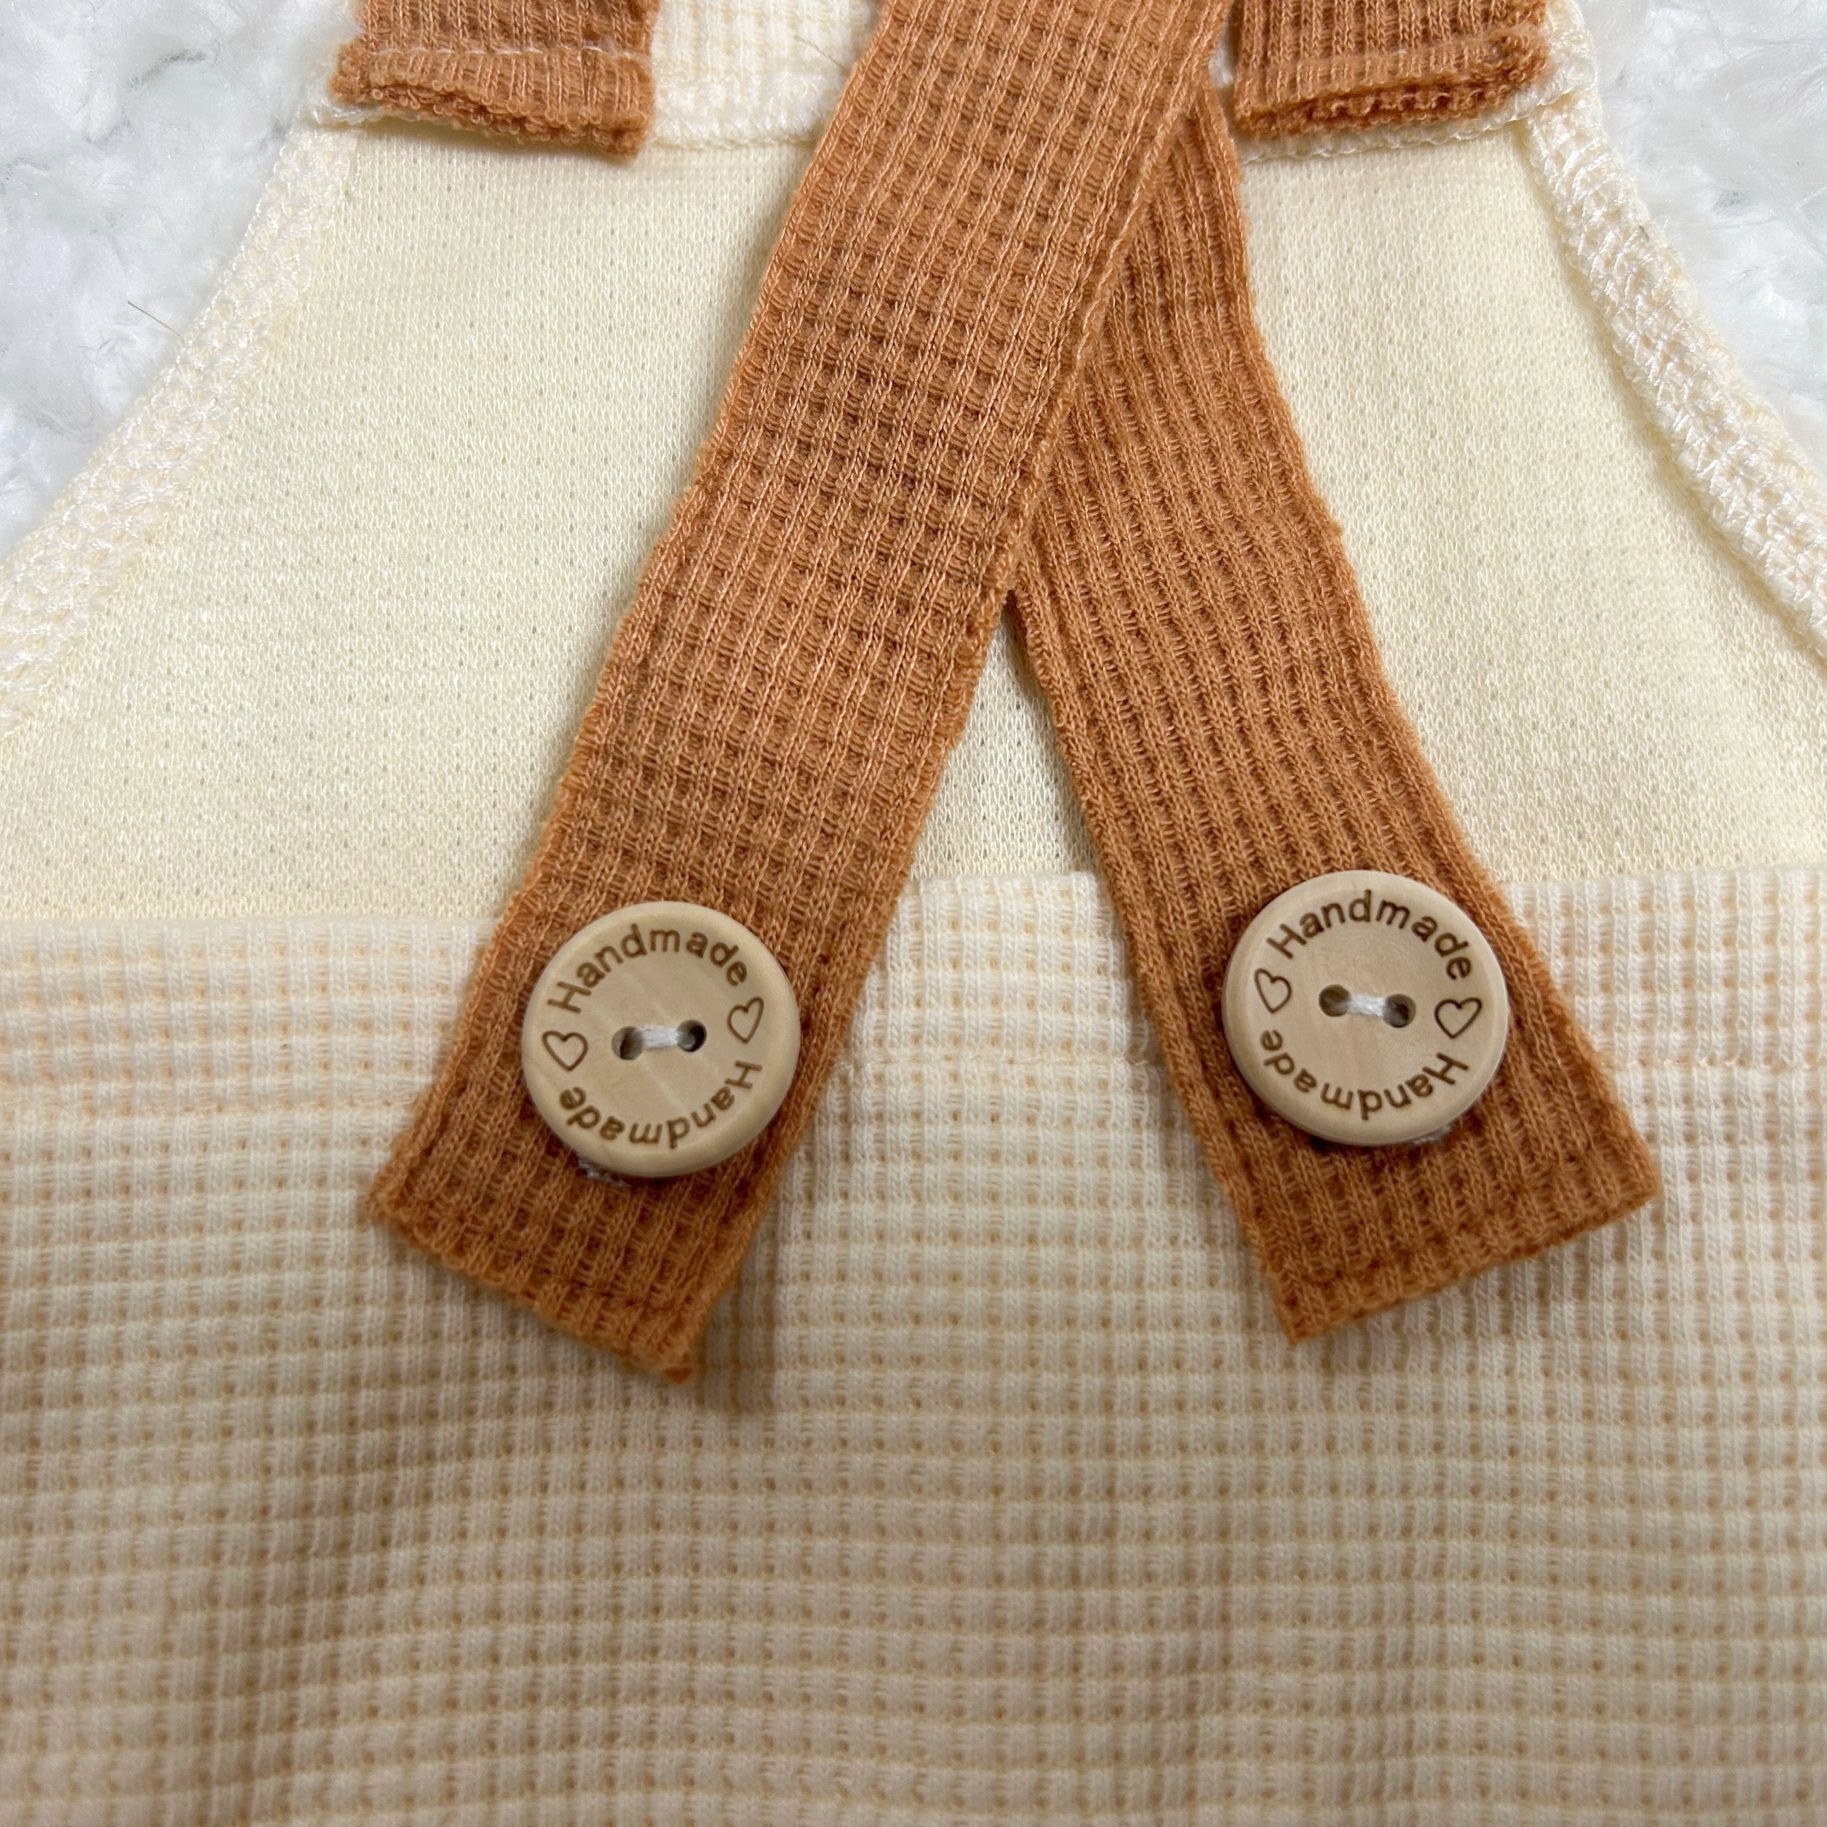 Precioso Mono Bebé Disfraz Ropa Fotos Accesorios Fotografía - Temu